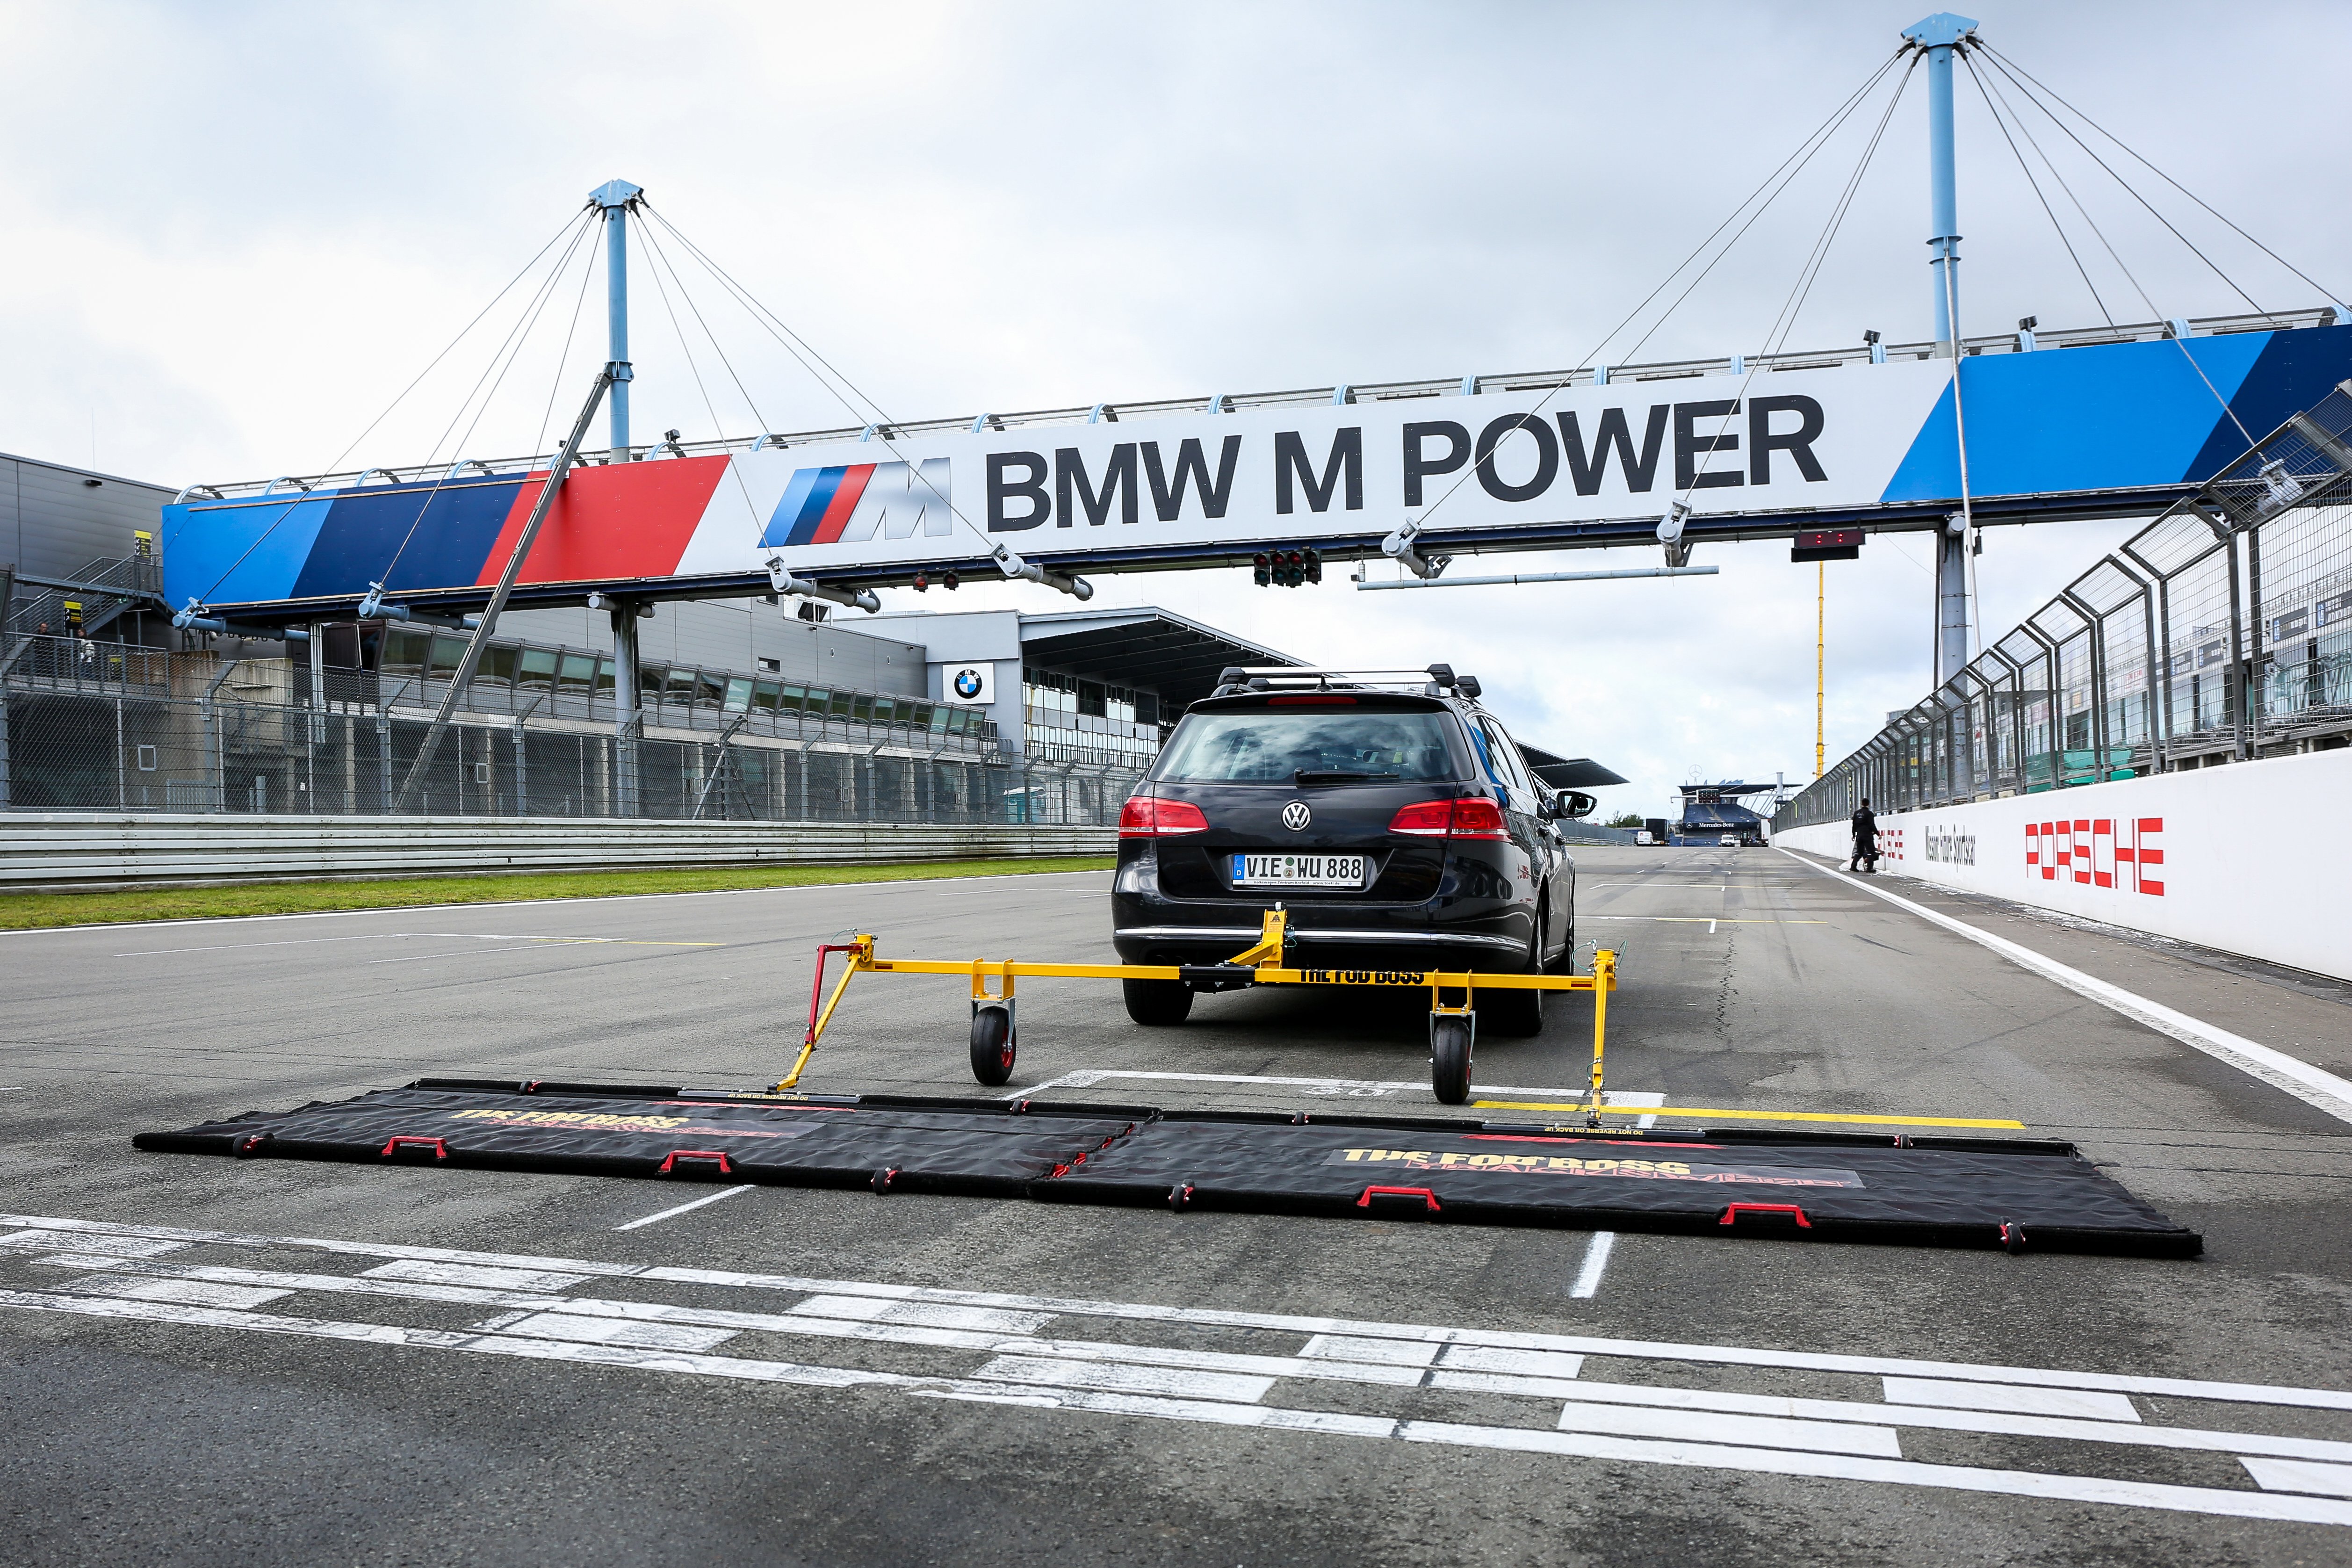 Aerosweep tracksweep on BMW racetrack